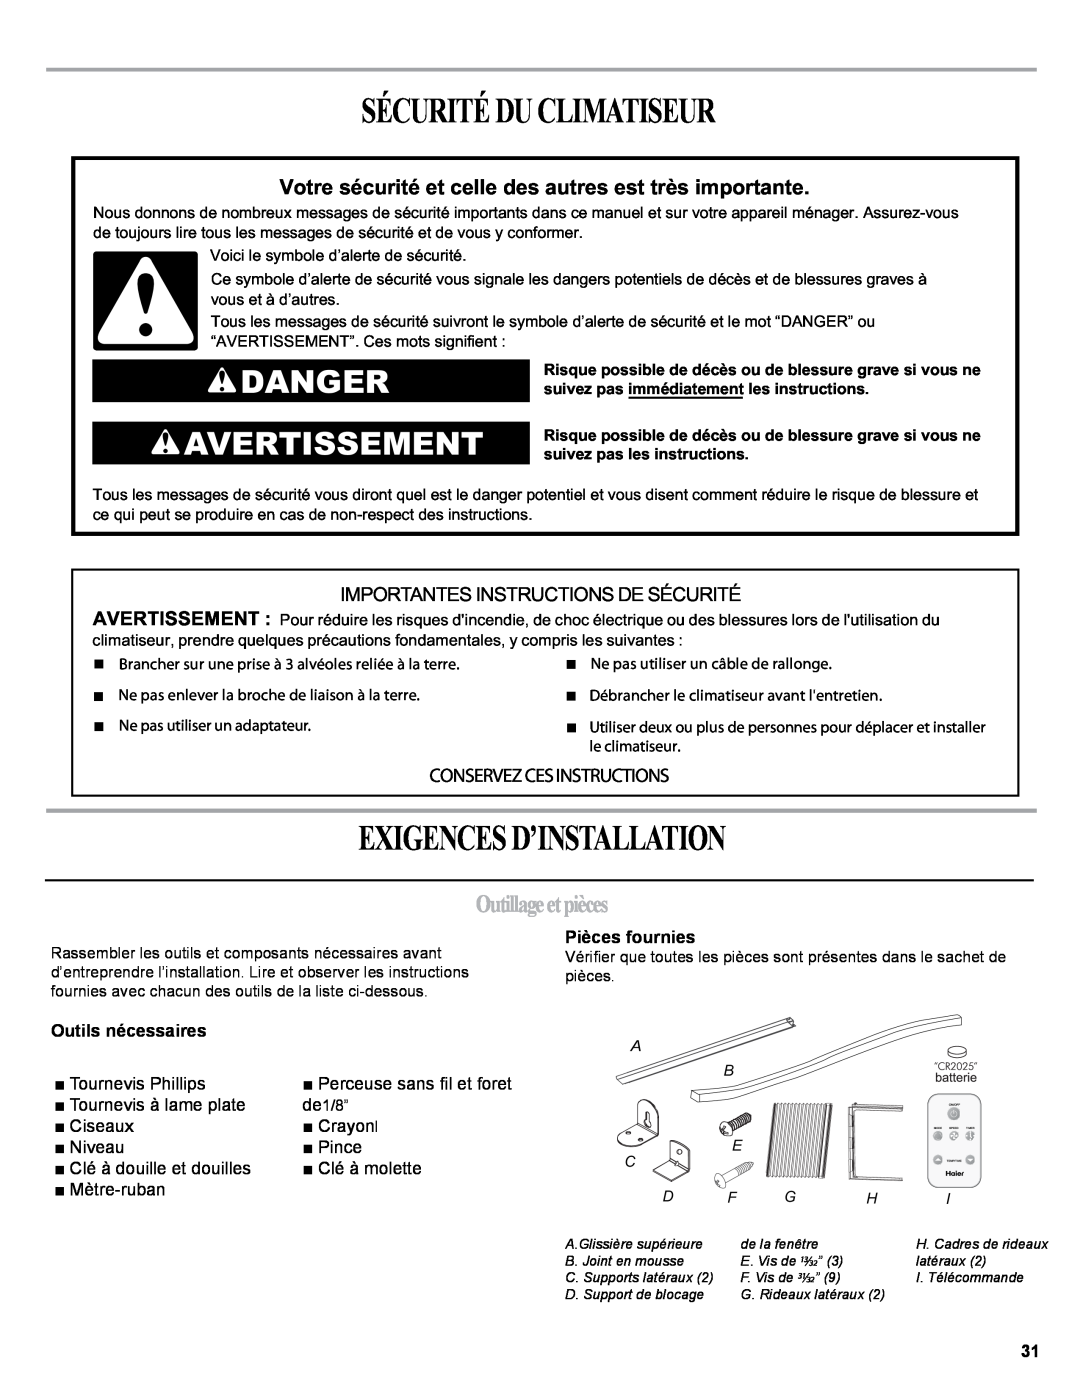 Haier 0010518358, HWR06XCJ manual Sécurité Du Climatiseur, Exigences D’Installation, Danger Avertissement, Outillageetpièces 